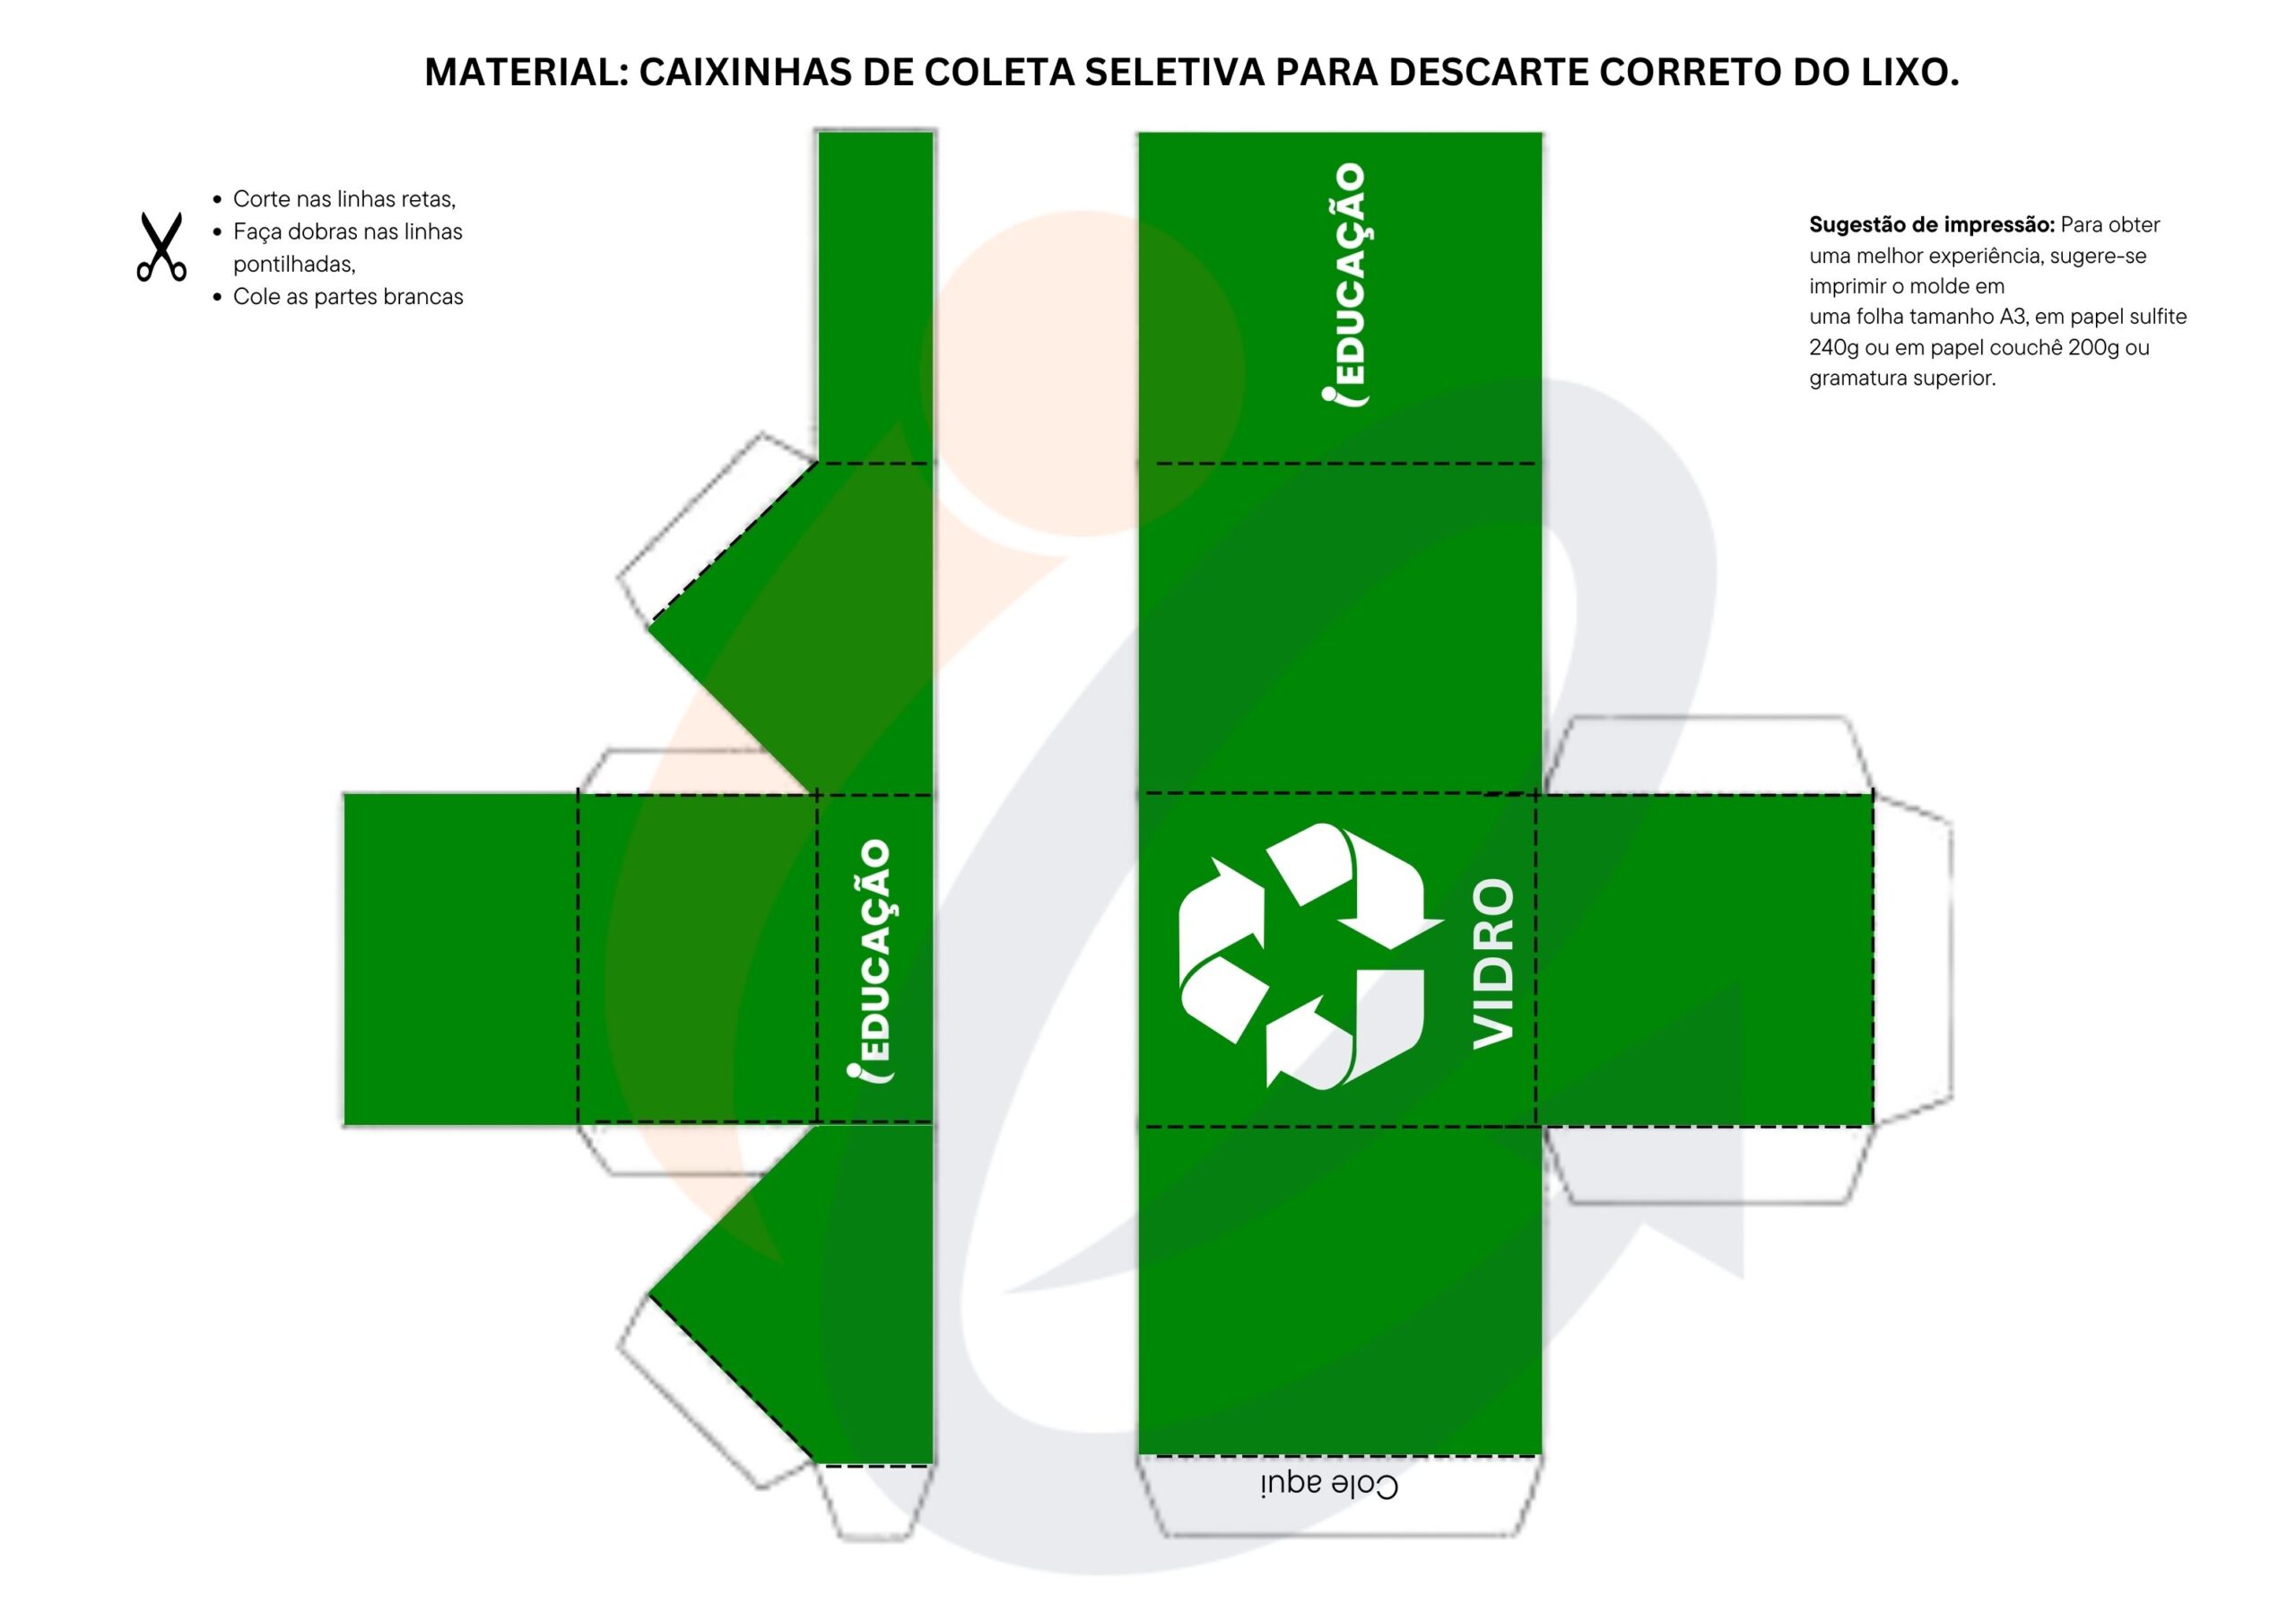 Recursos pedagógicos para o Dia do Meio Ambiente - caixinhas de coleta seletiva para descarte correto do lixo. Lixo verde para descarte de vidro para reciclagem